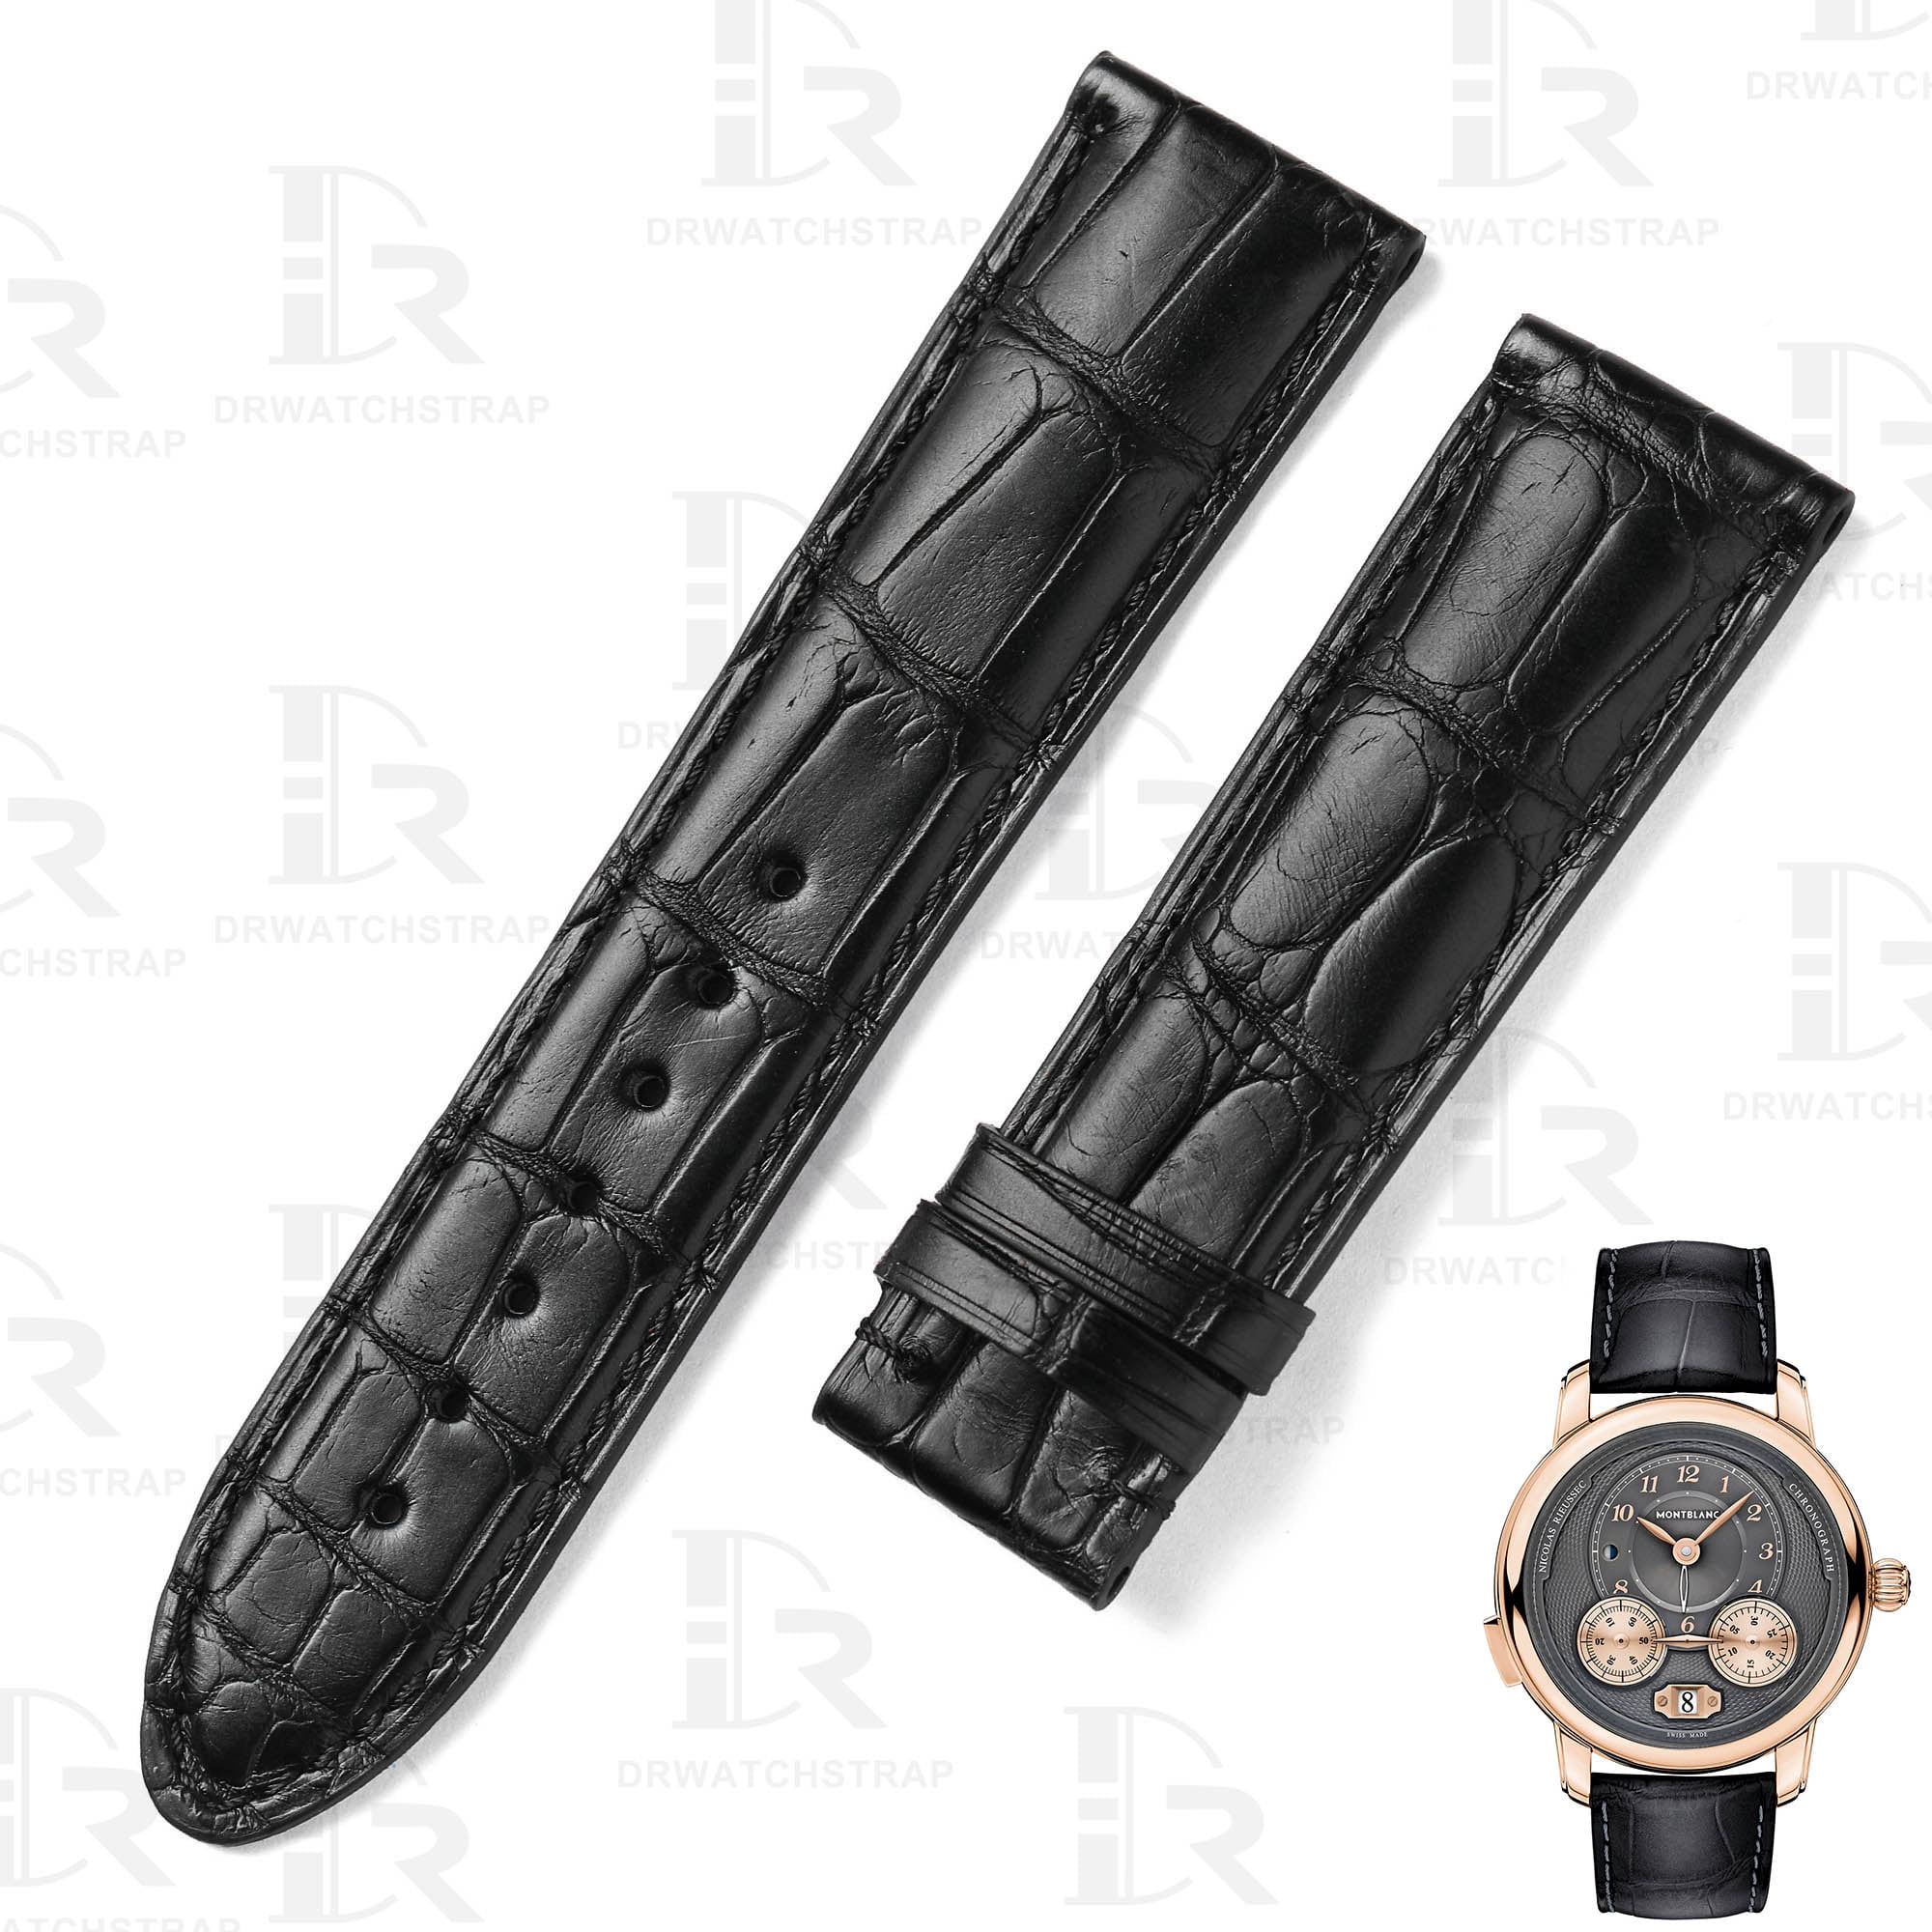 Handmade black alligator leather Montblanc watch strap